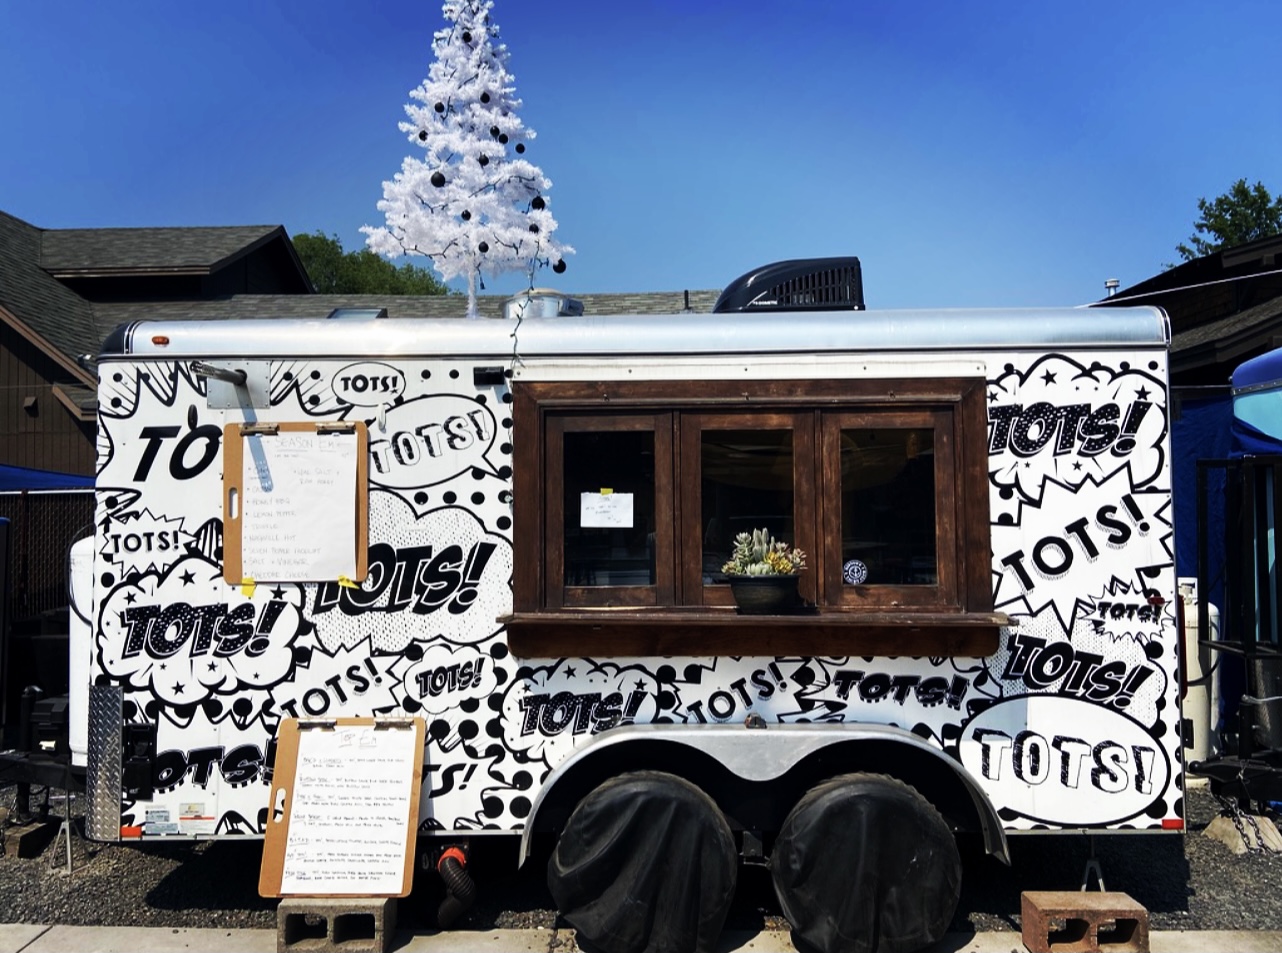 Feelin’ Tots, Tots, Tots - TOTS! The Bend, Oregon Food Truck Serving Spherical Scrumptiousness Culinary Treasure Network 